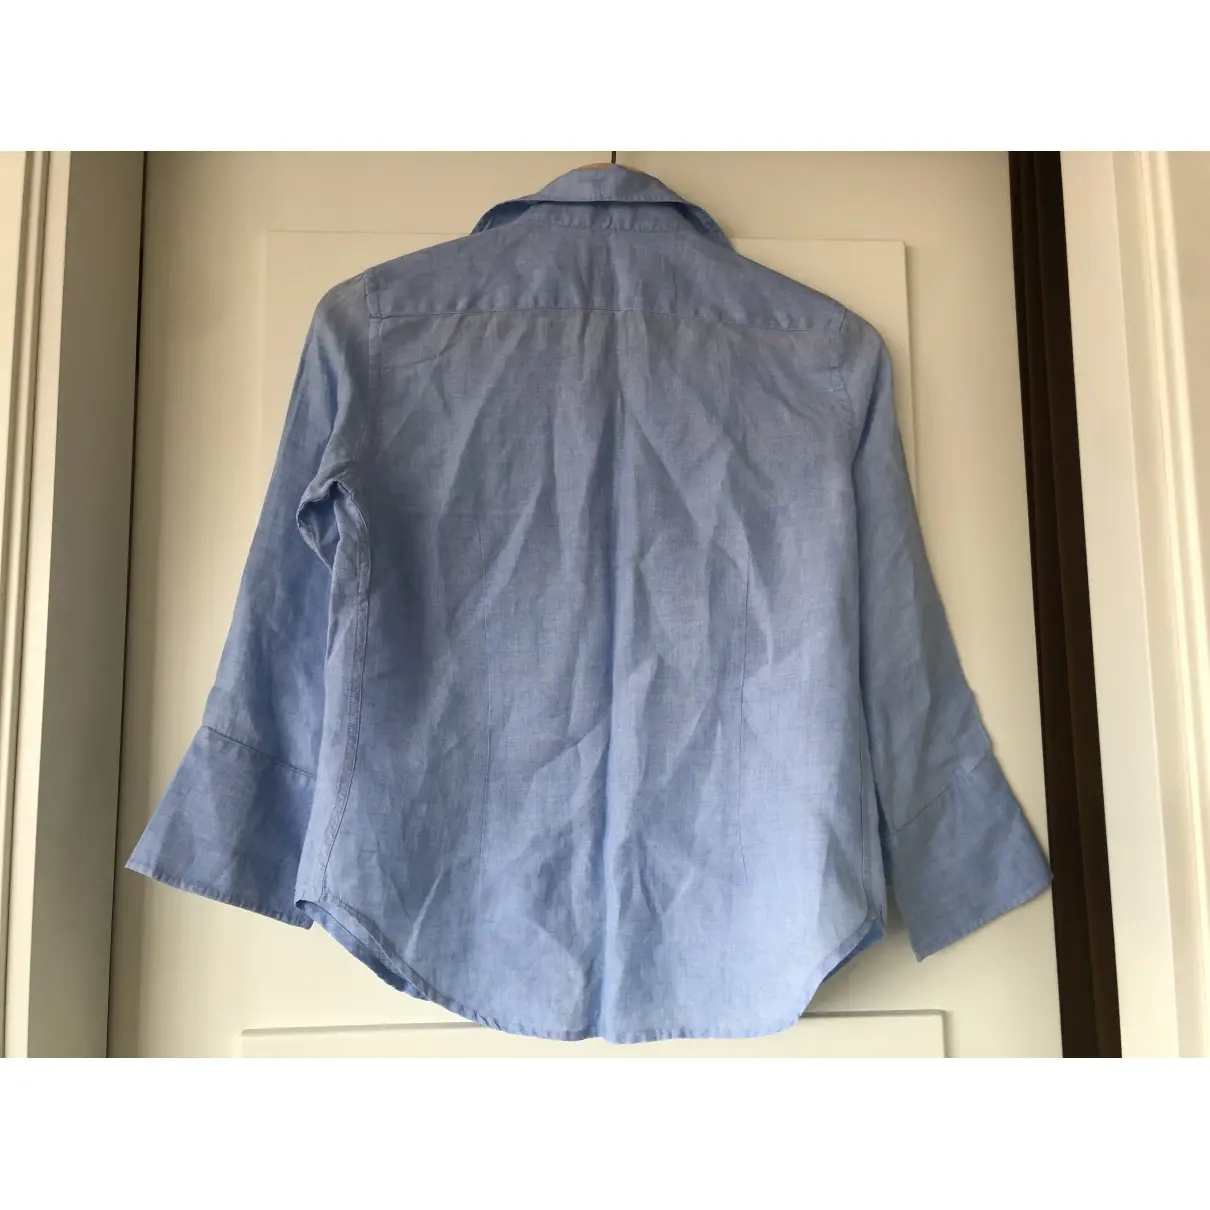 Faconnable Linen blouse for sale